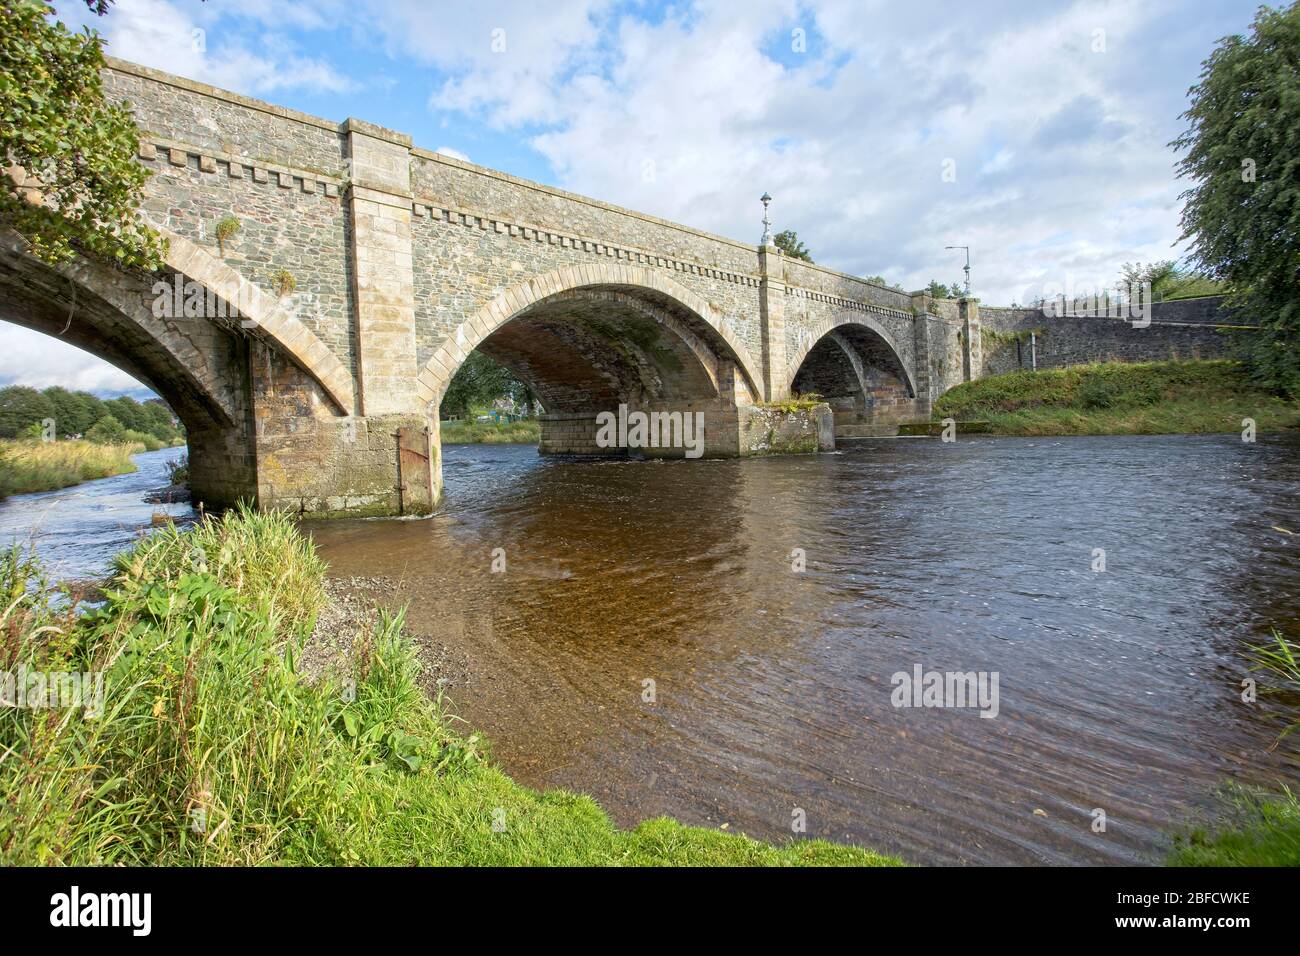 Road bridge across the River Tweed in Peebles, Scottish Borders, Scotland, UK. Stock Photo